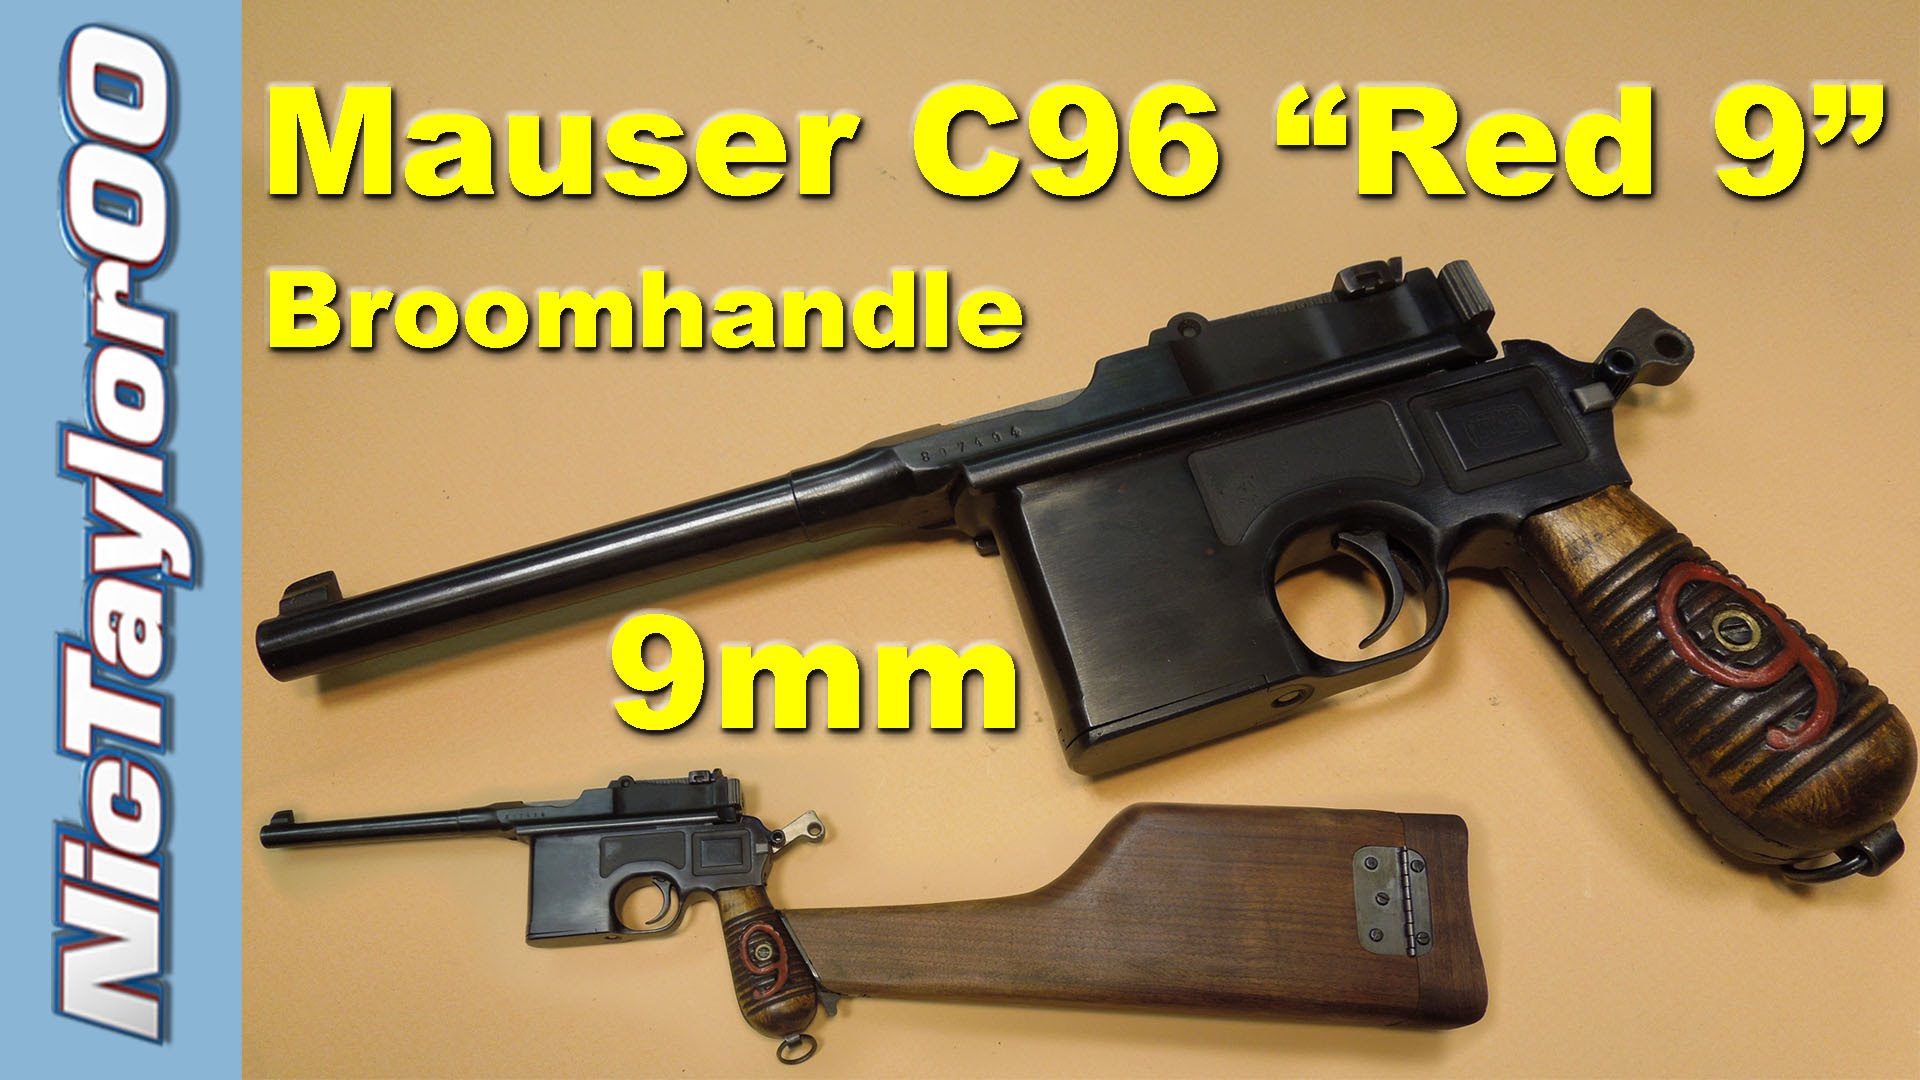 Mauser 9mm C96 "Red 9" Broom Handle Pistol